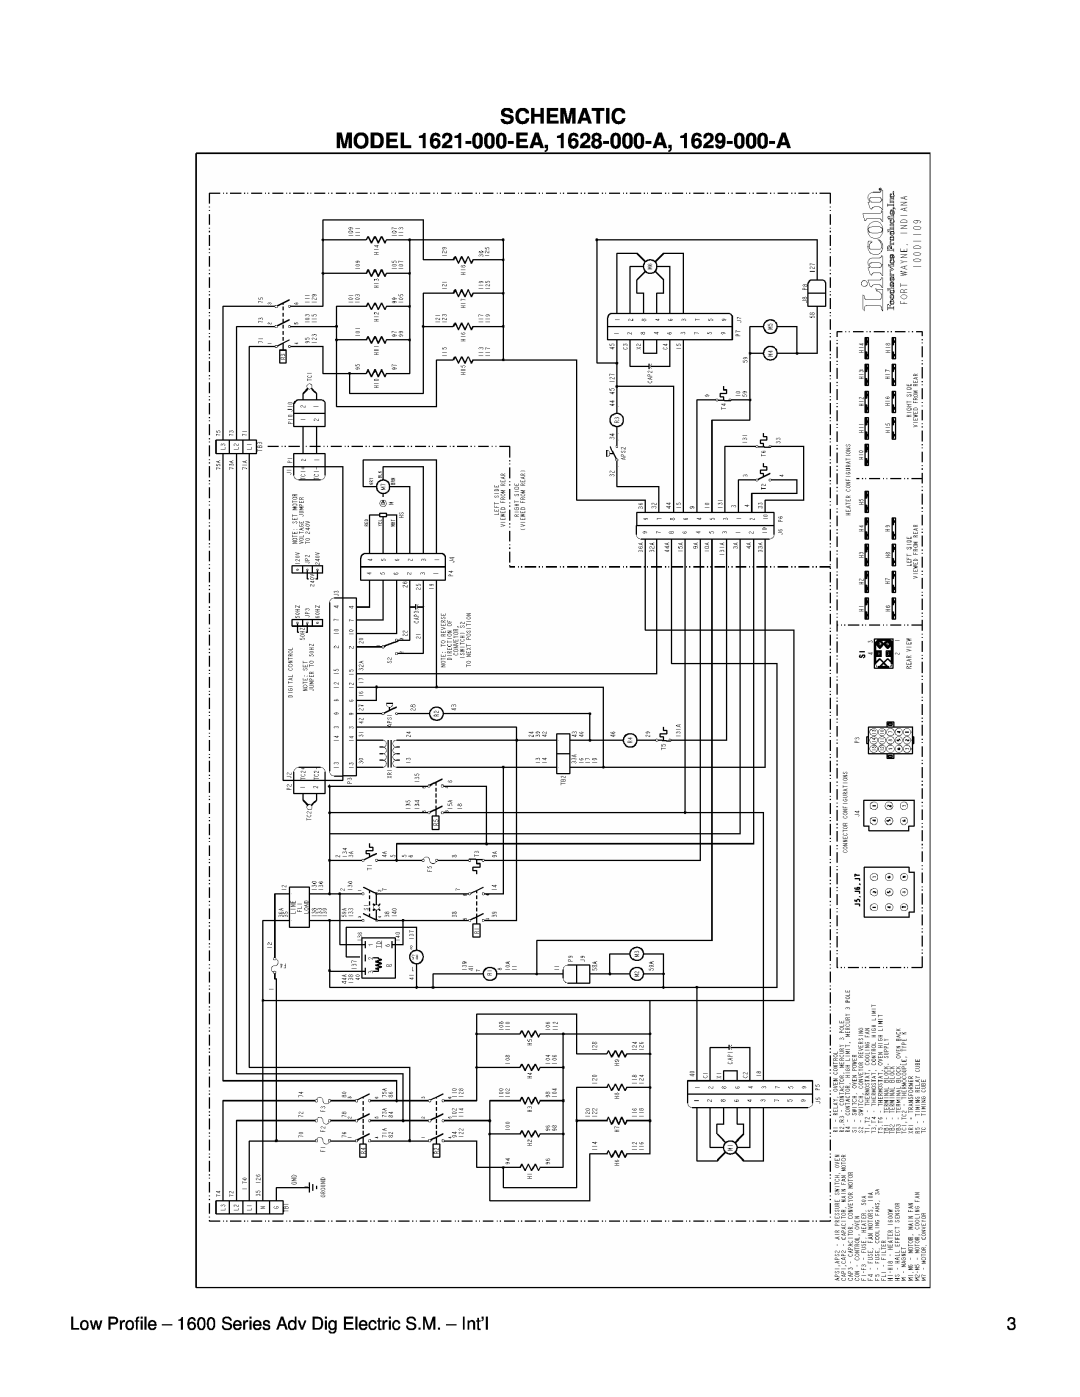 Lincoln service manual Schematic, MODEL 1621-000-EA, 1628-000-A, 1629-000-A 